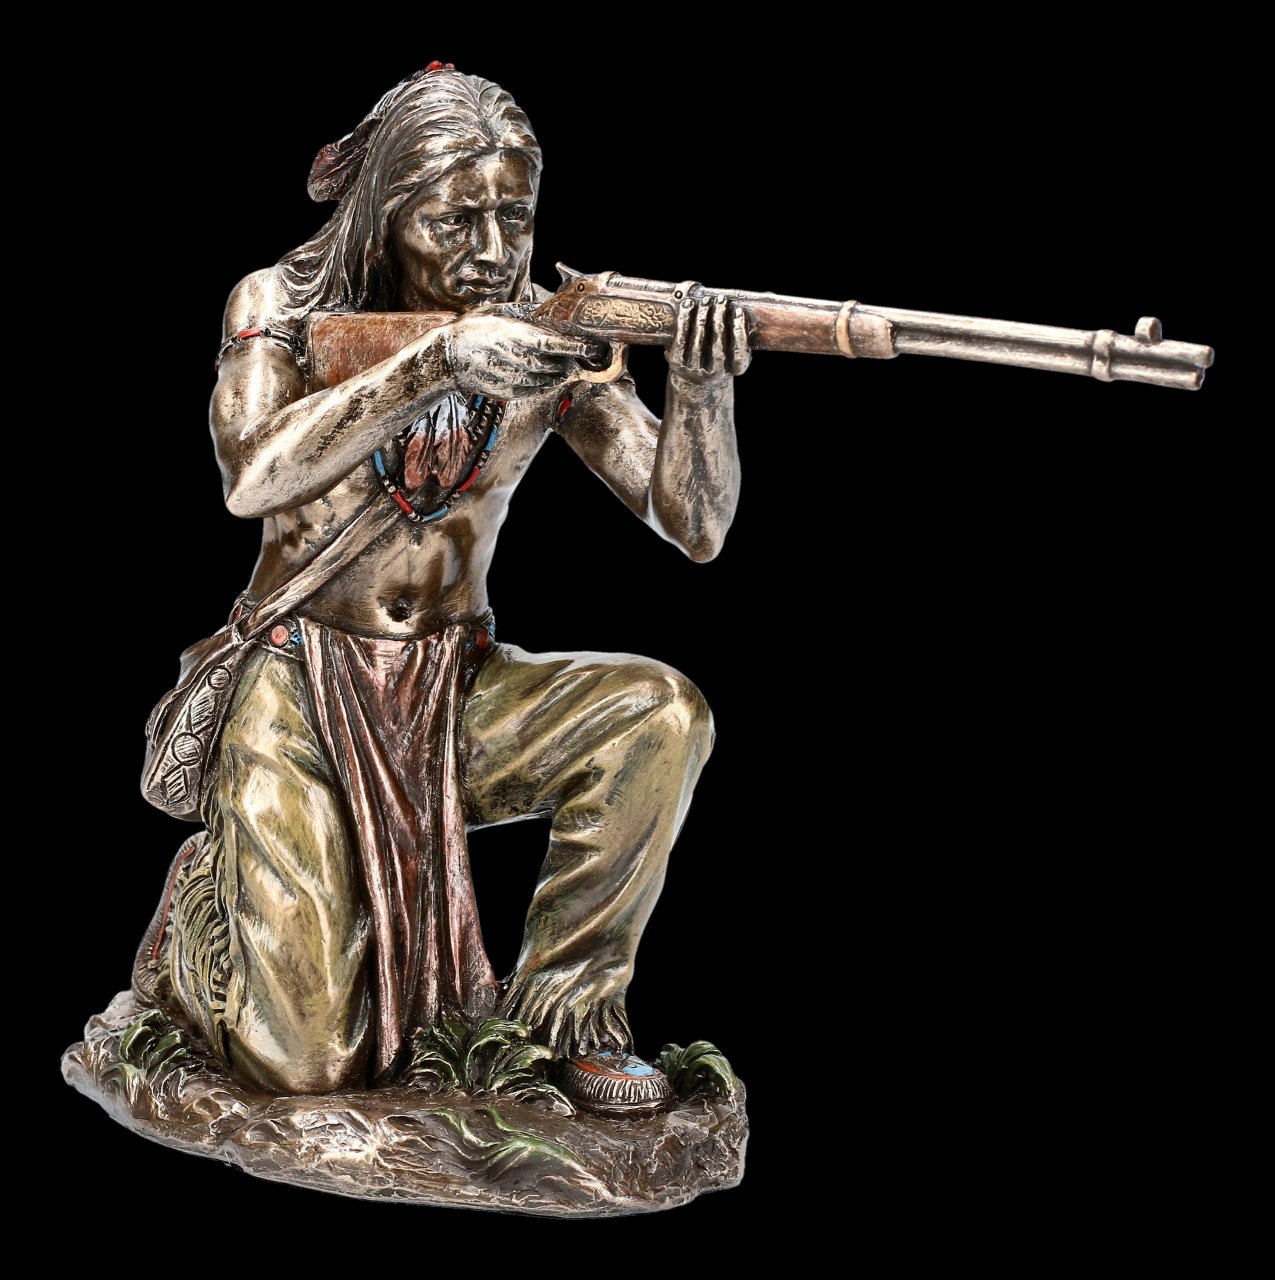 Indian Figurine - Lurking Warrior with Gun